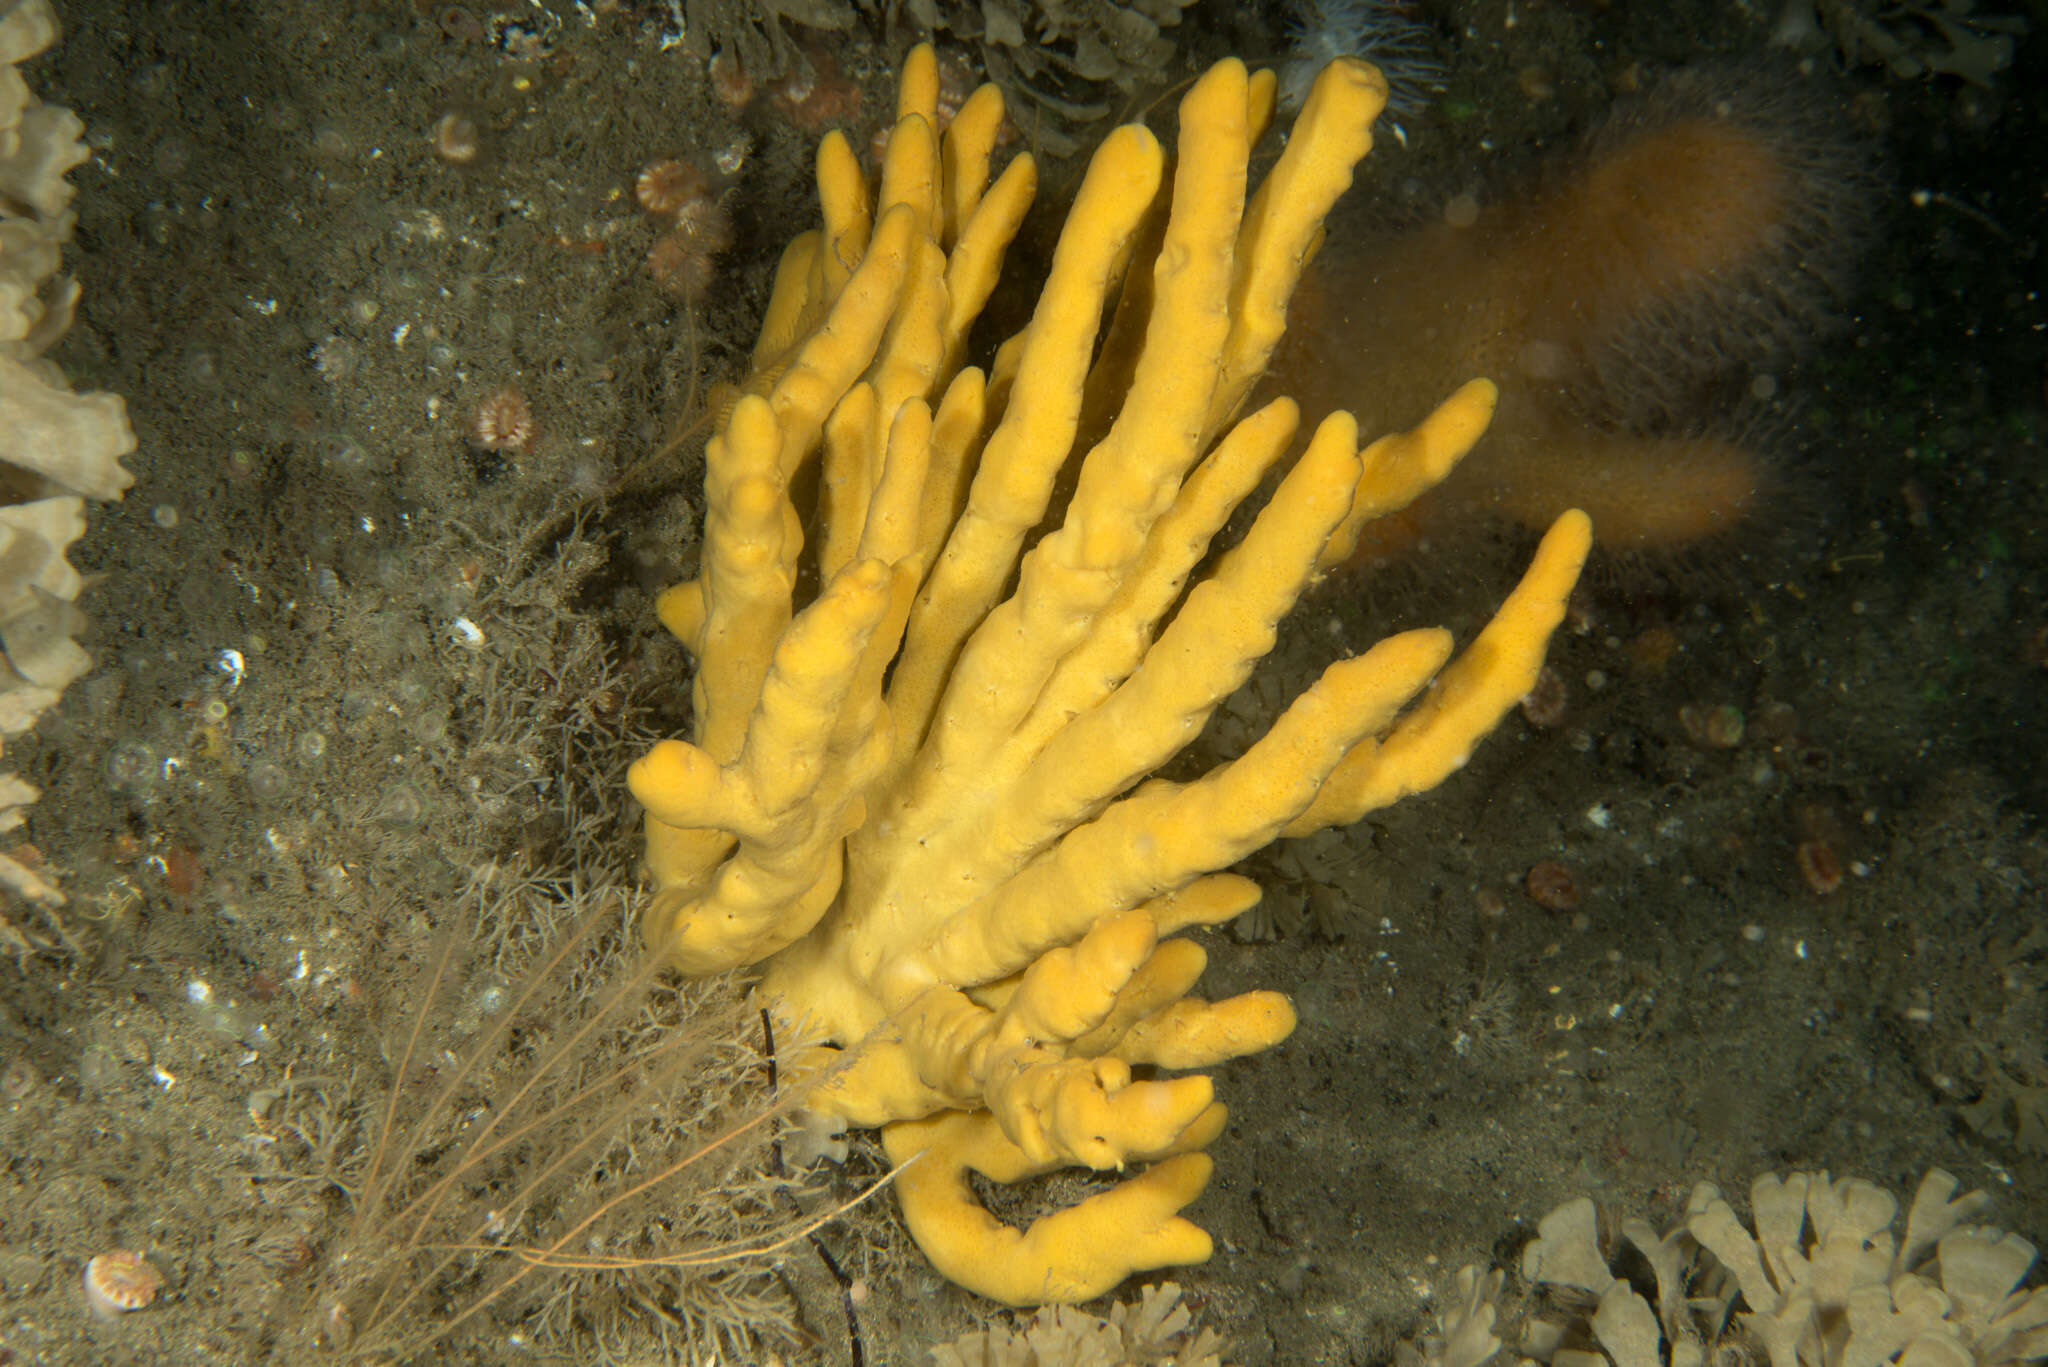 Image of branching sponge